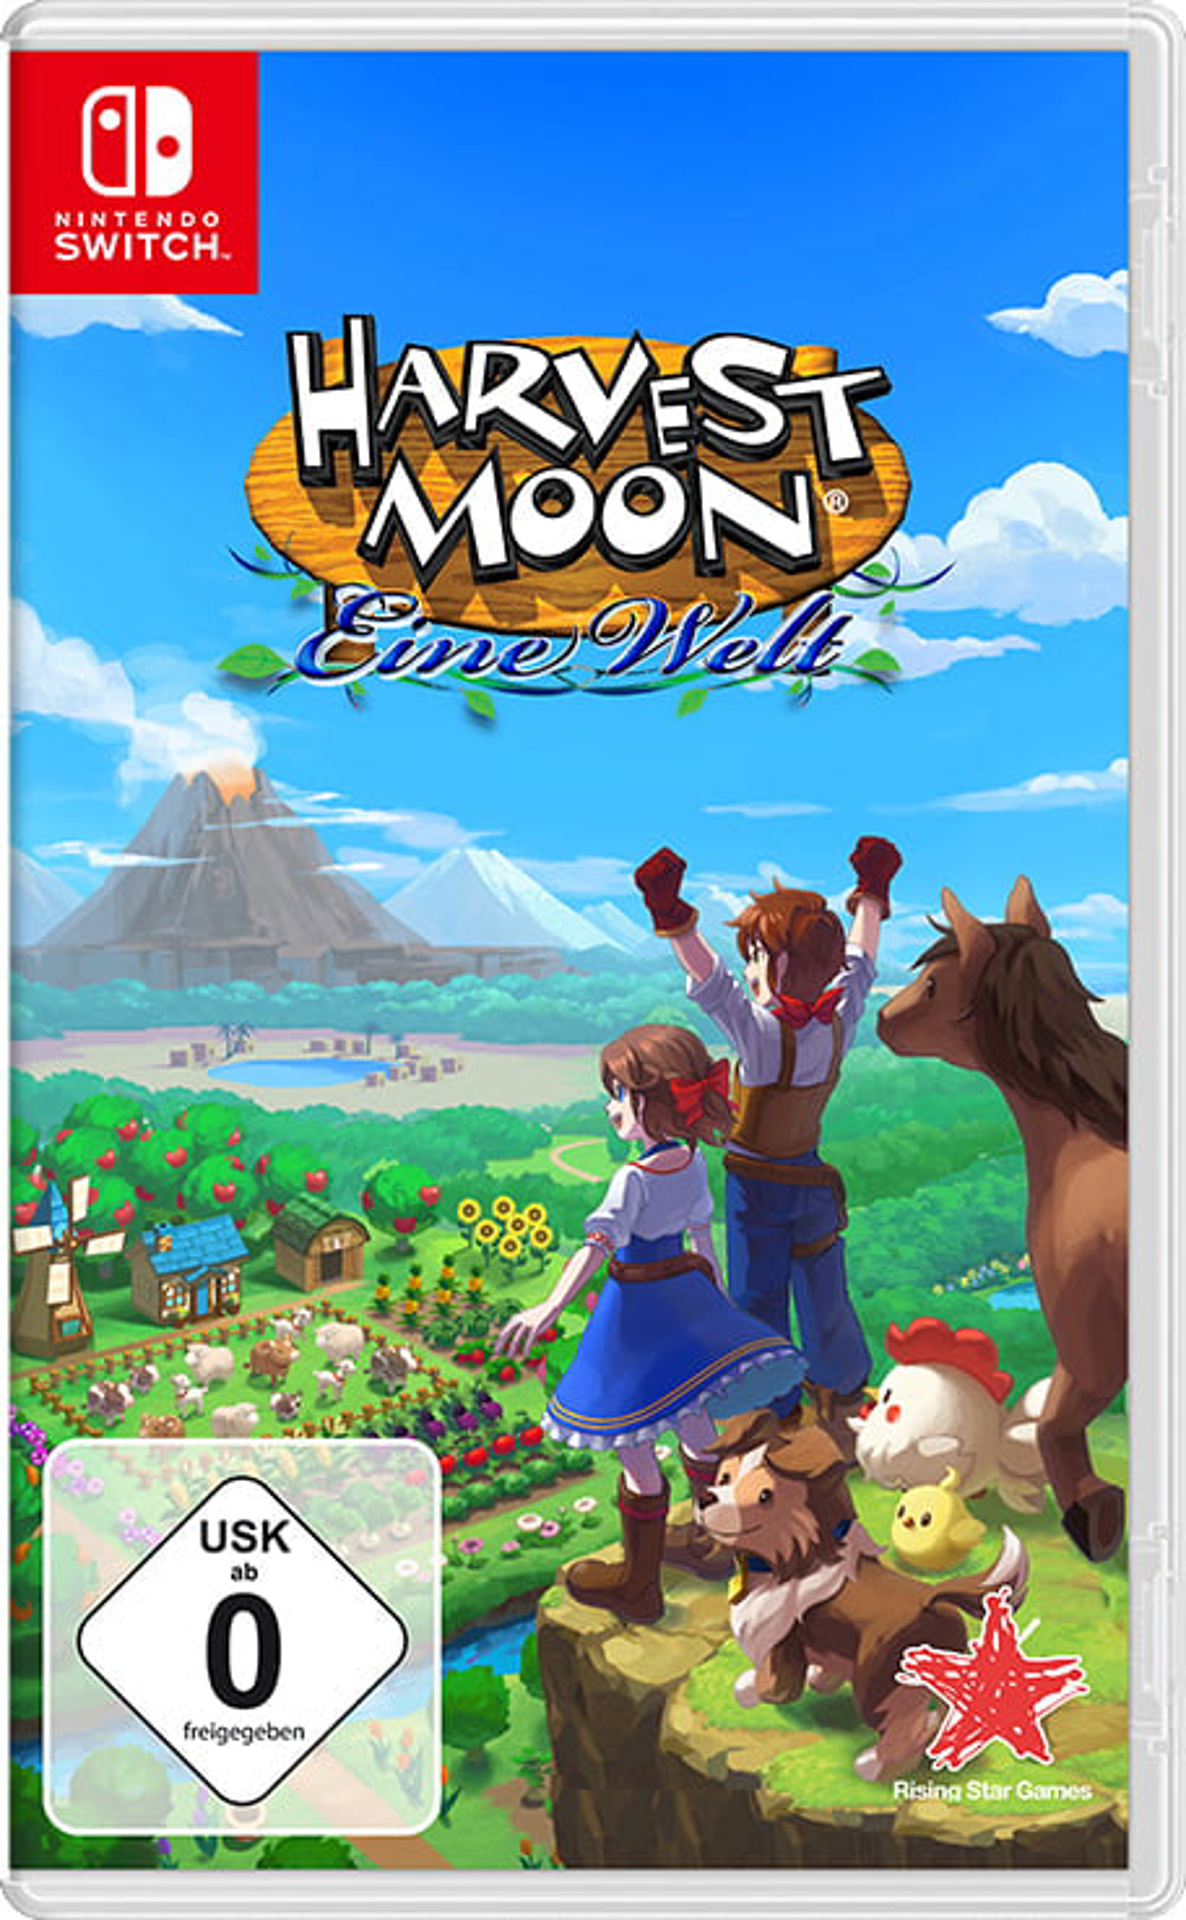 Harvest Moon : Un Monde à Cultiver